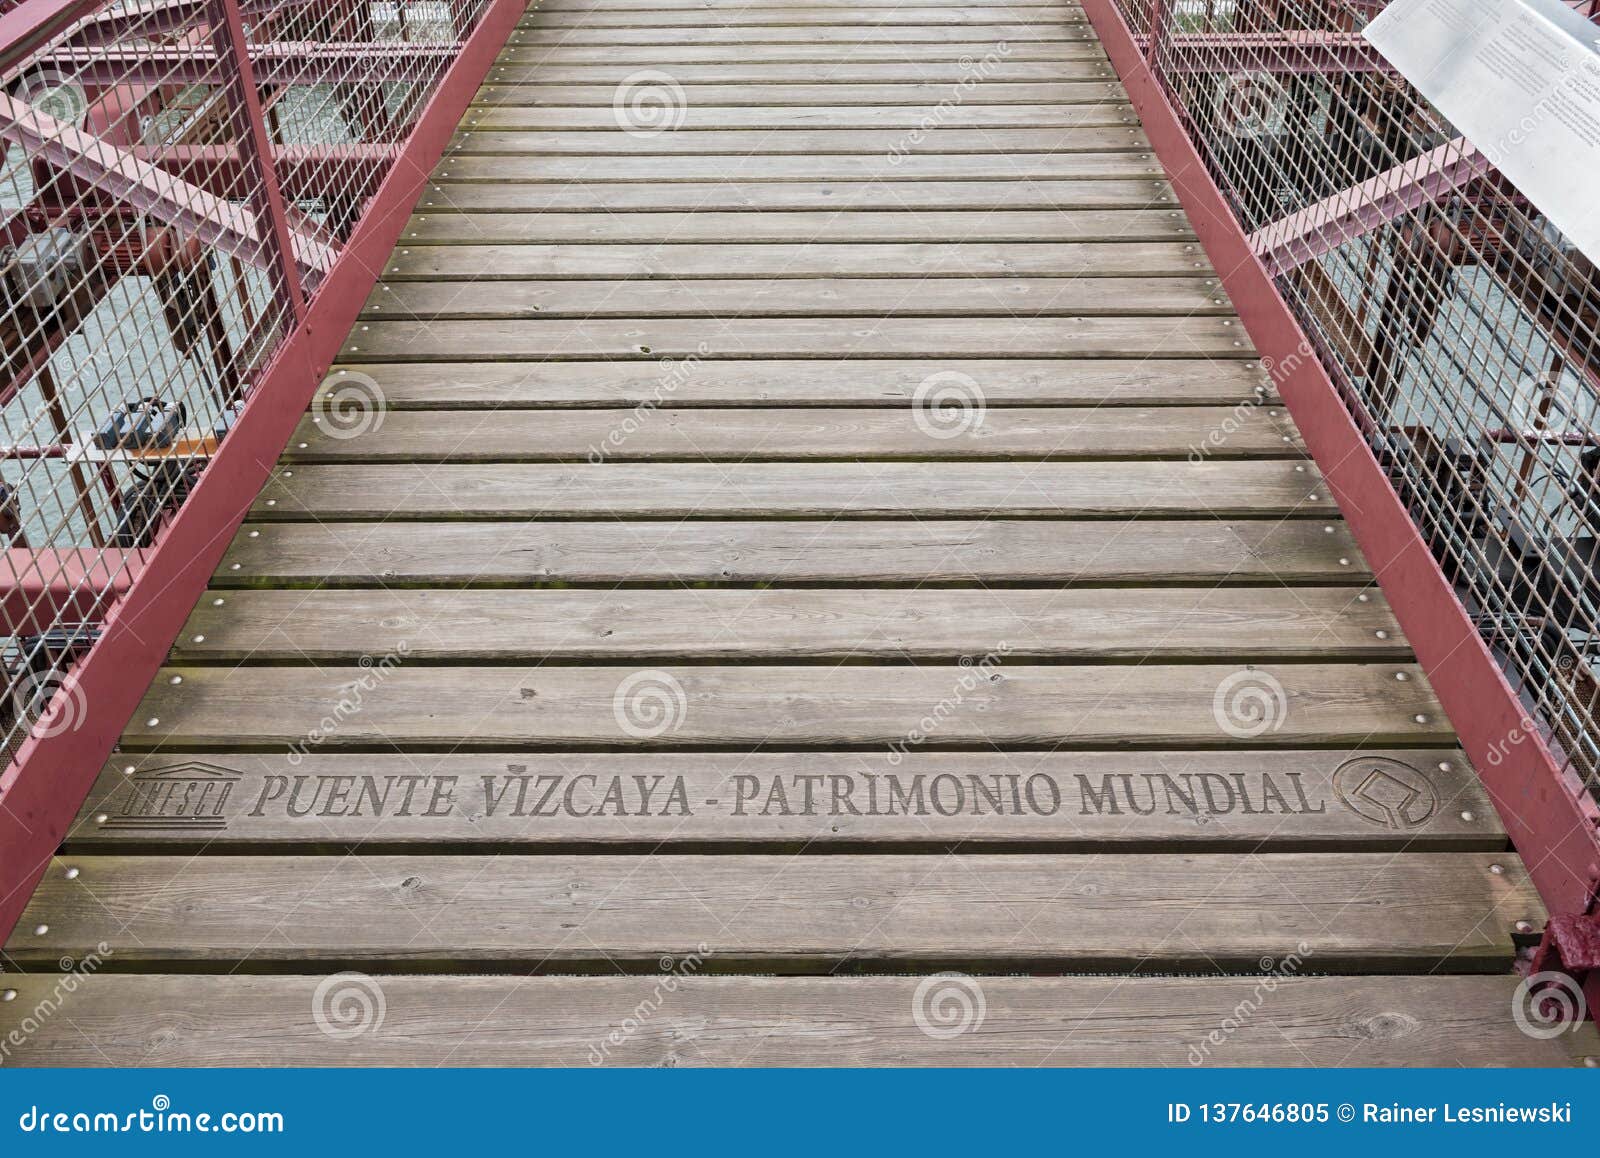 lettering unesco puente vizcaya-patrimonio mundial on the suspension bridge of bizkaia puente de vizcaya between getxo and